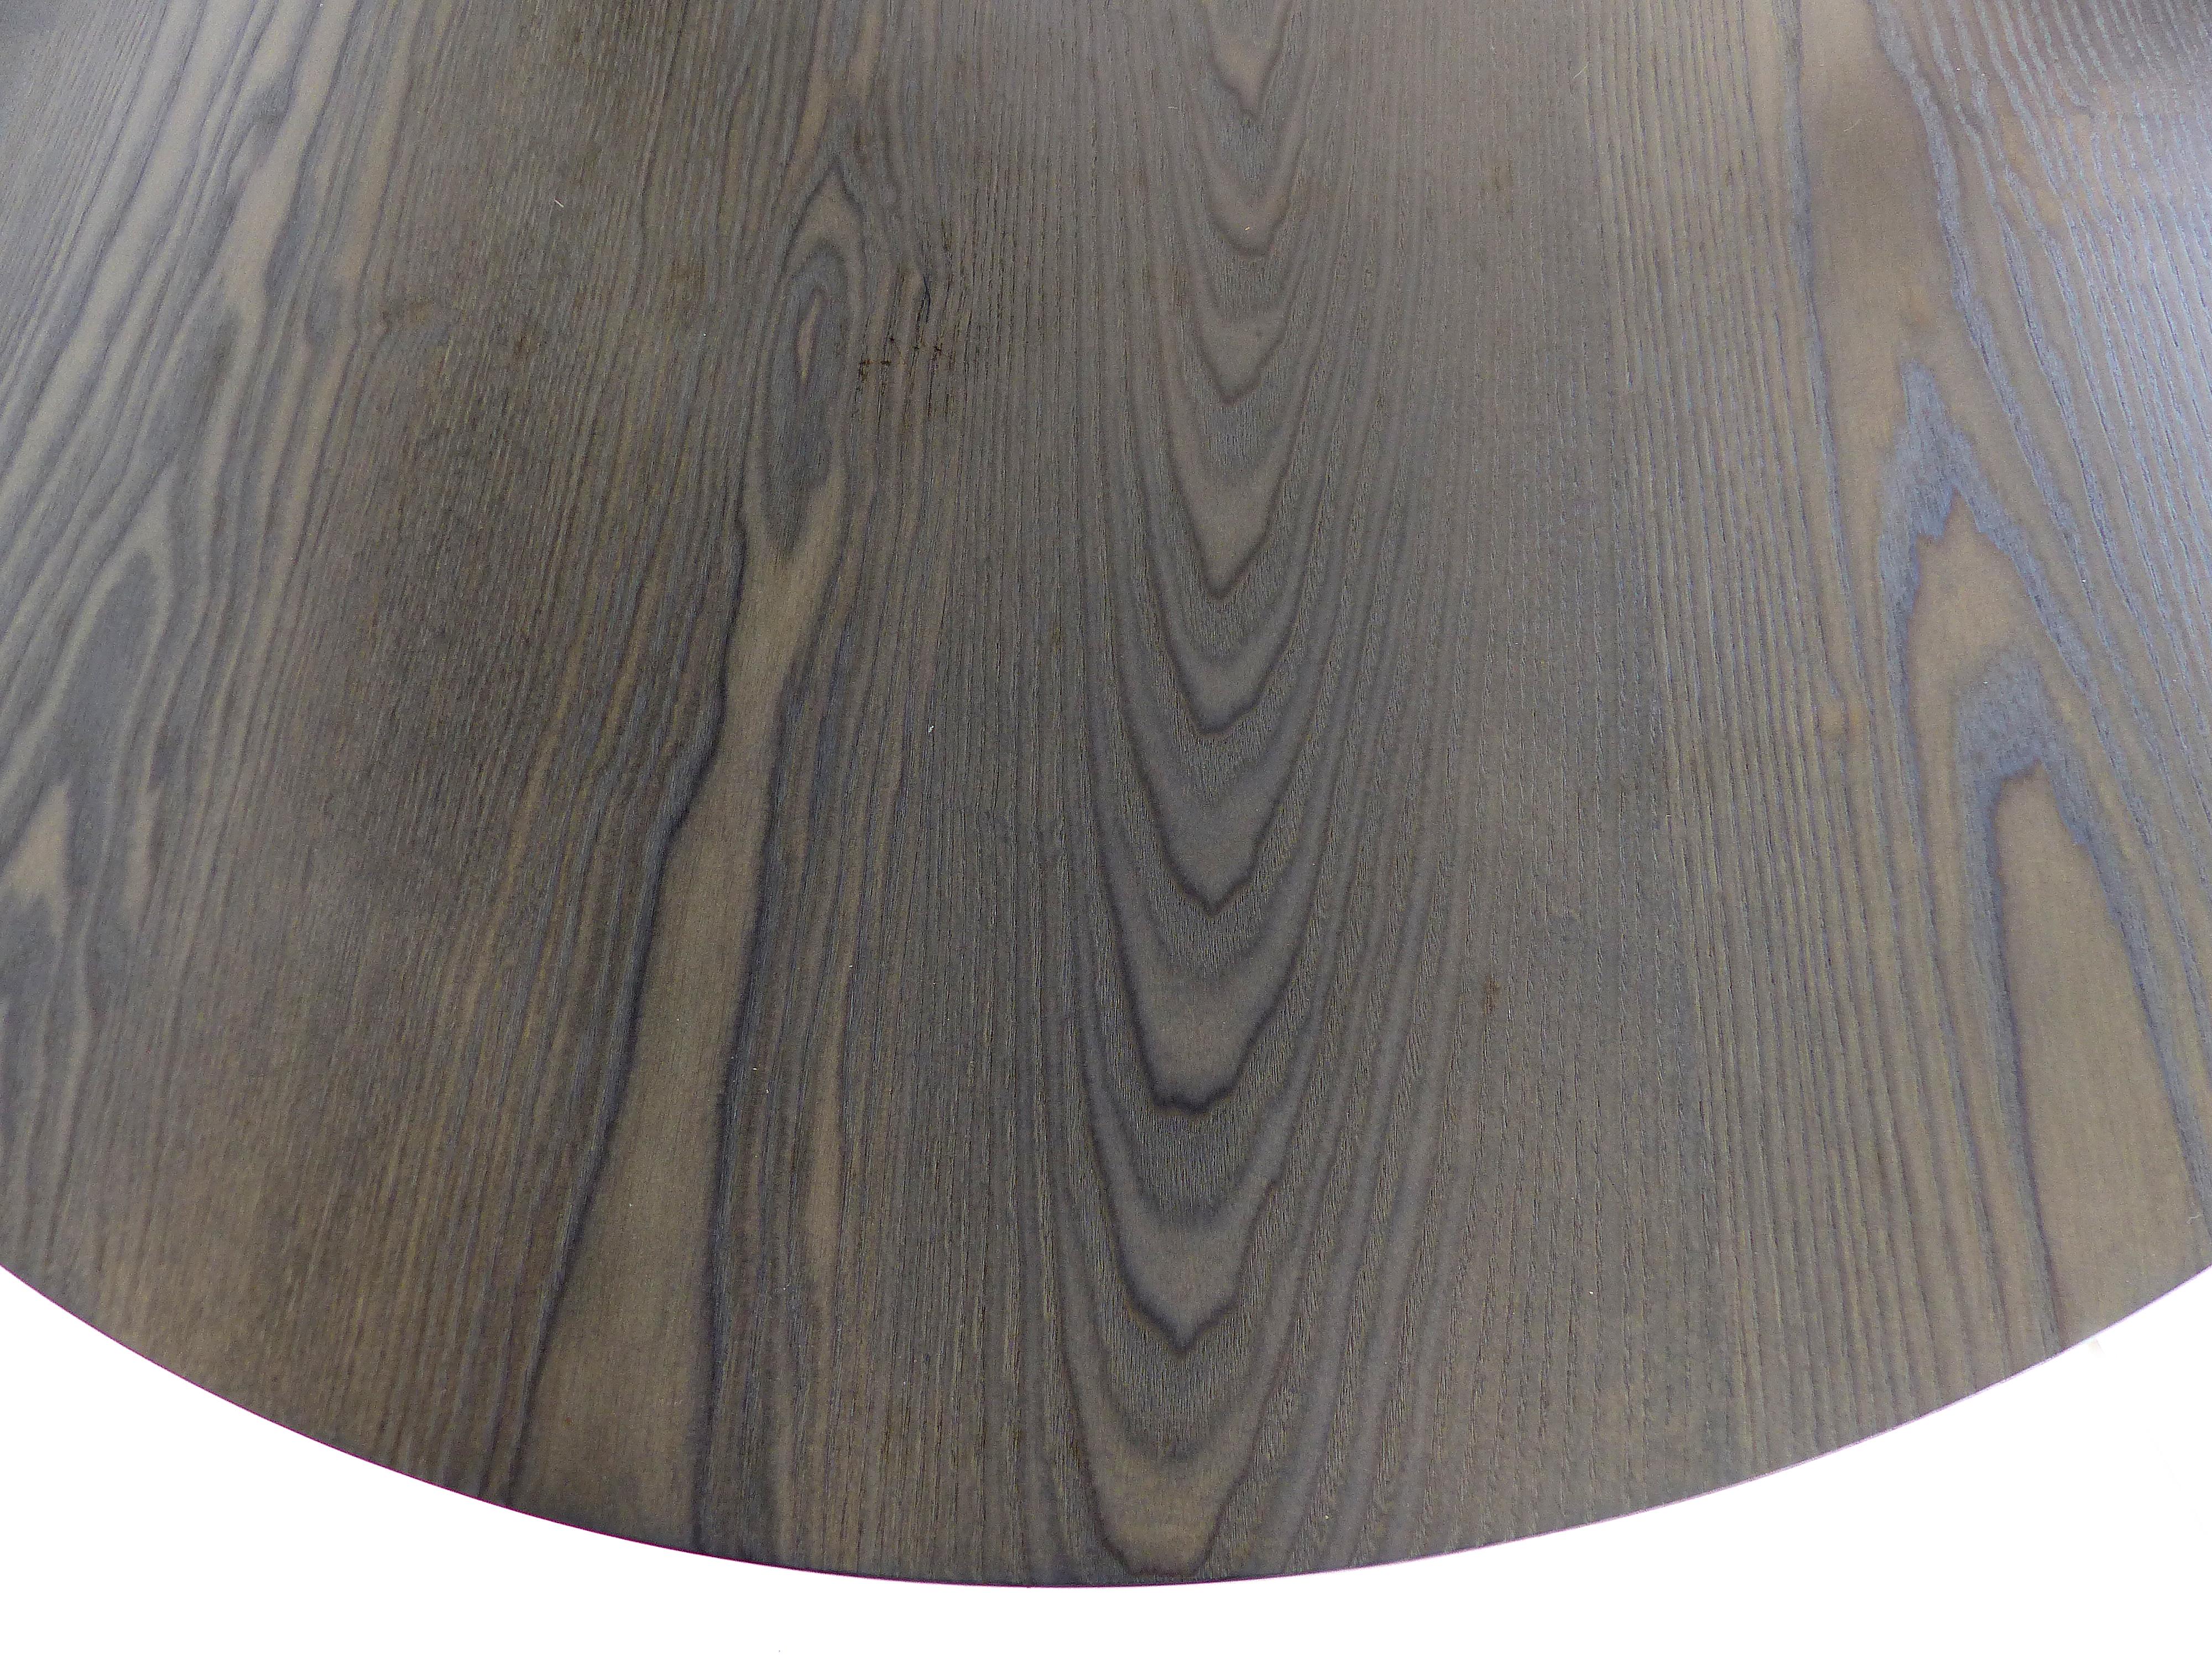 Contemporary O & G Studio Warren, Rhode Island Cerused Oak Table in the Shaker Style